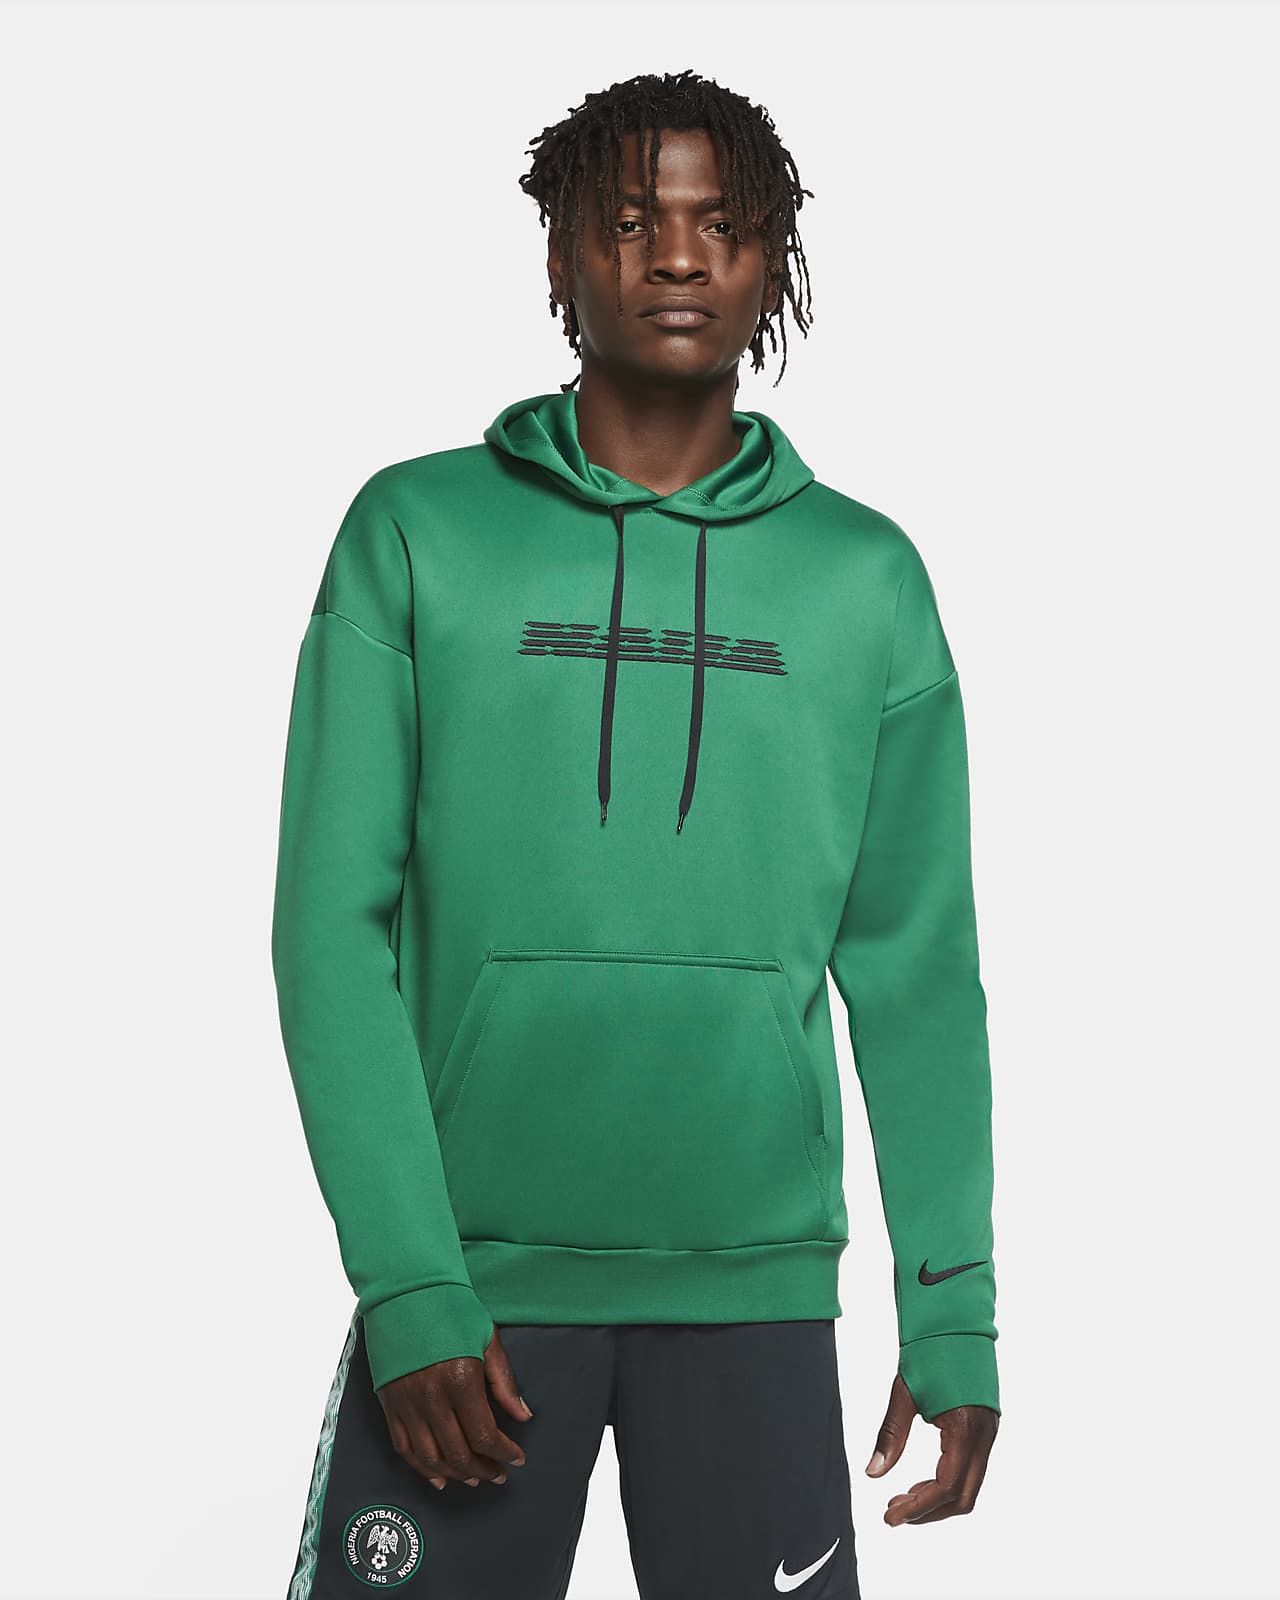 pine green hoodie nike